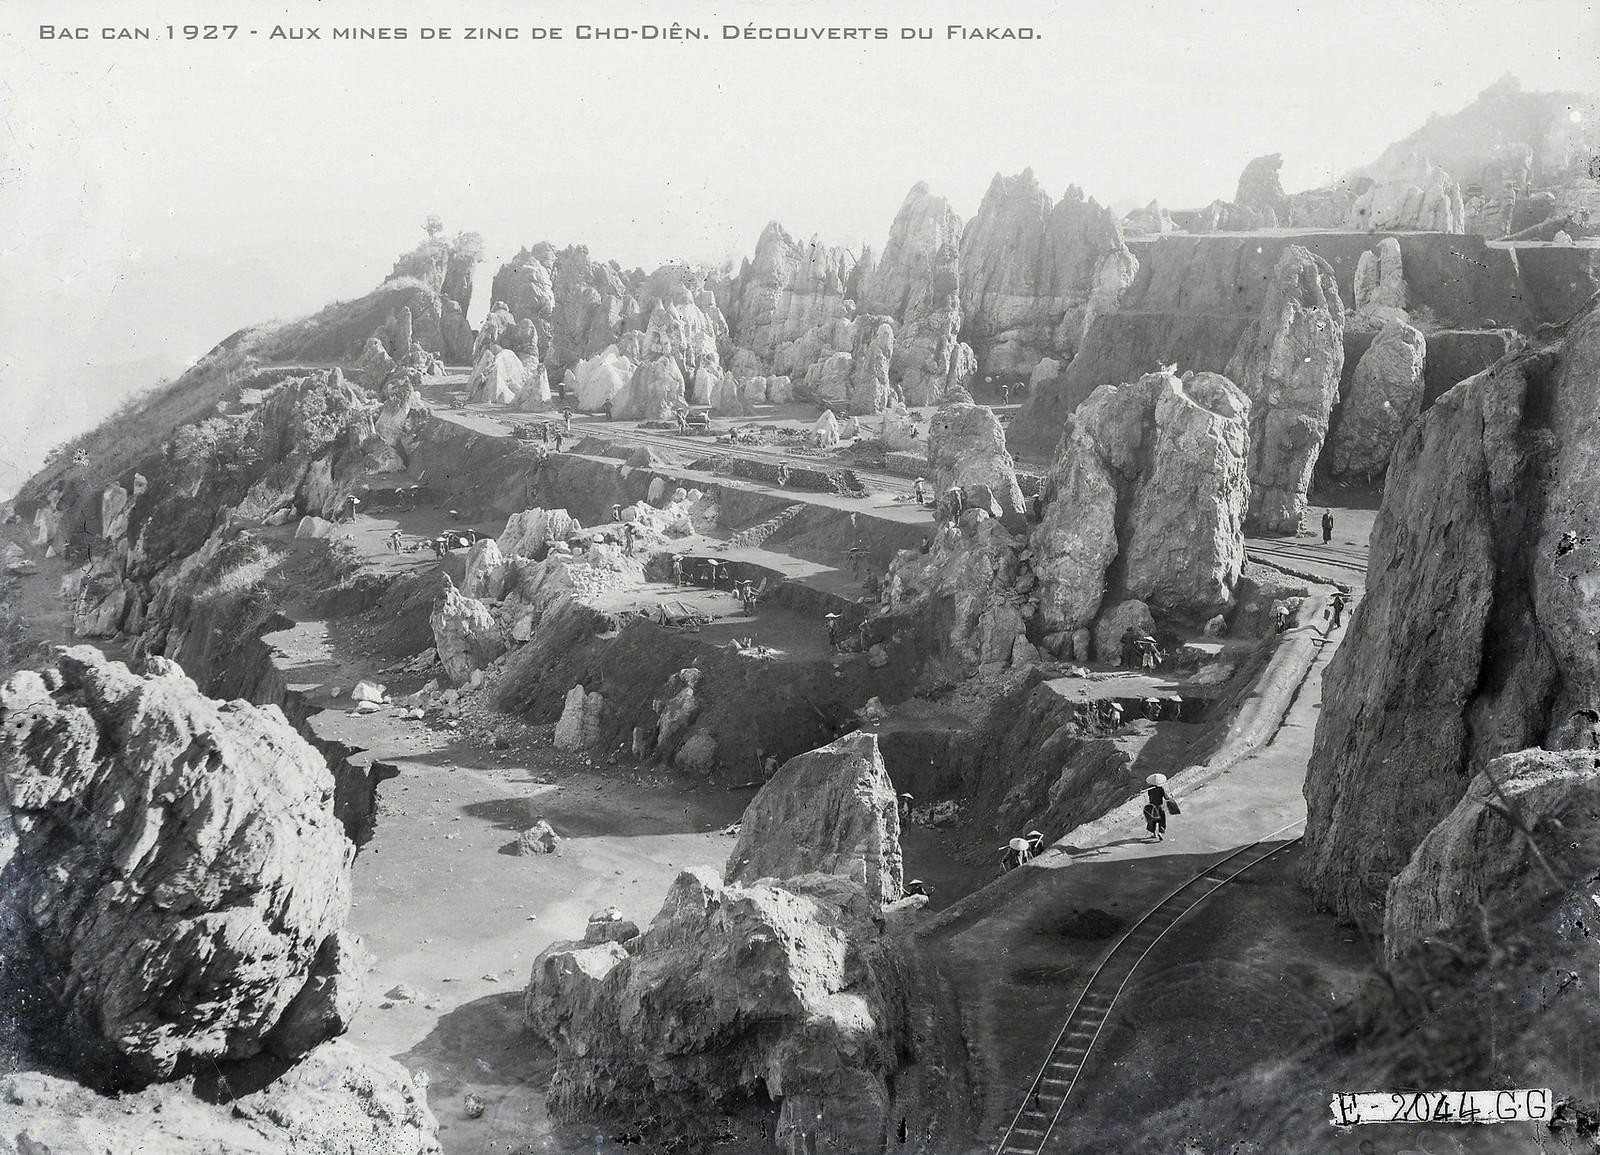 Chùm ảnh: Mỏ khoáng sản khổng lồ ở Bắc Cạn 100 năm trước